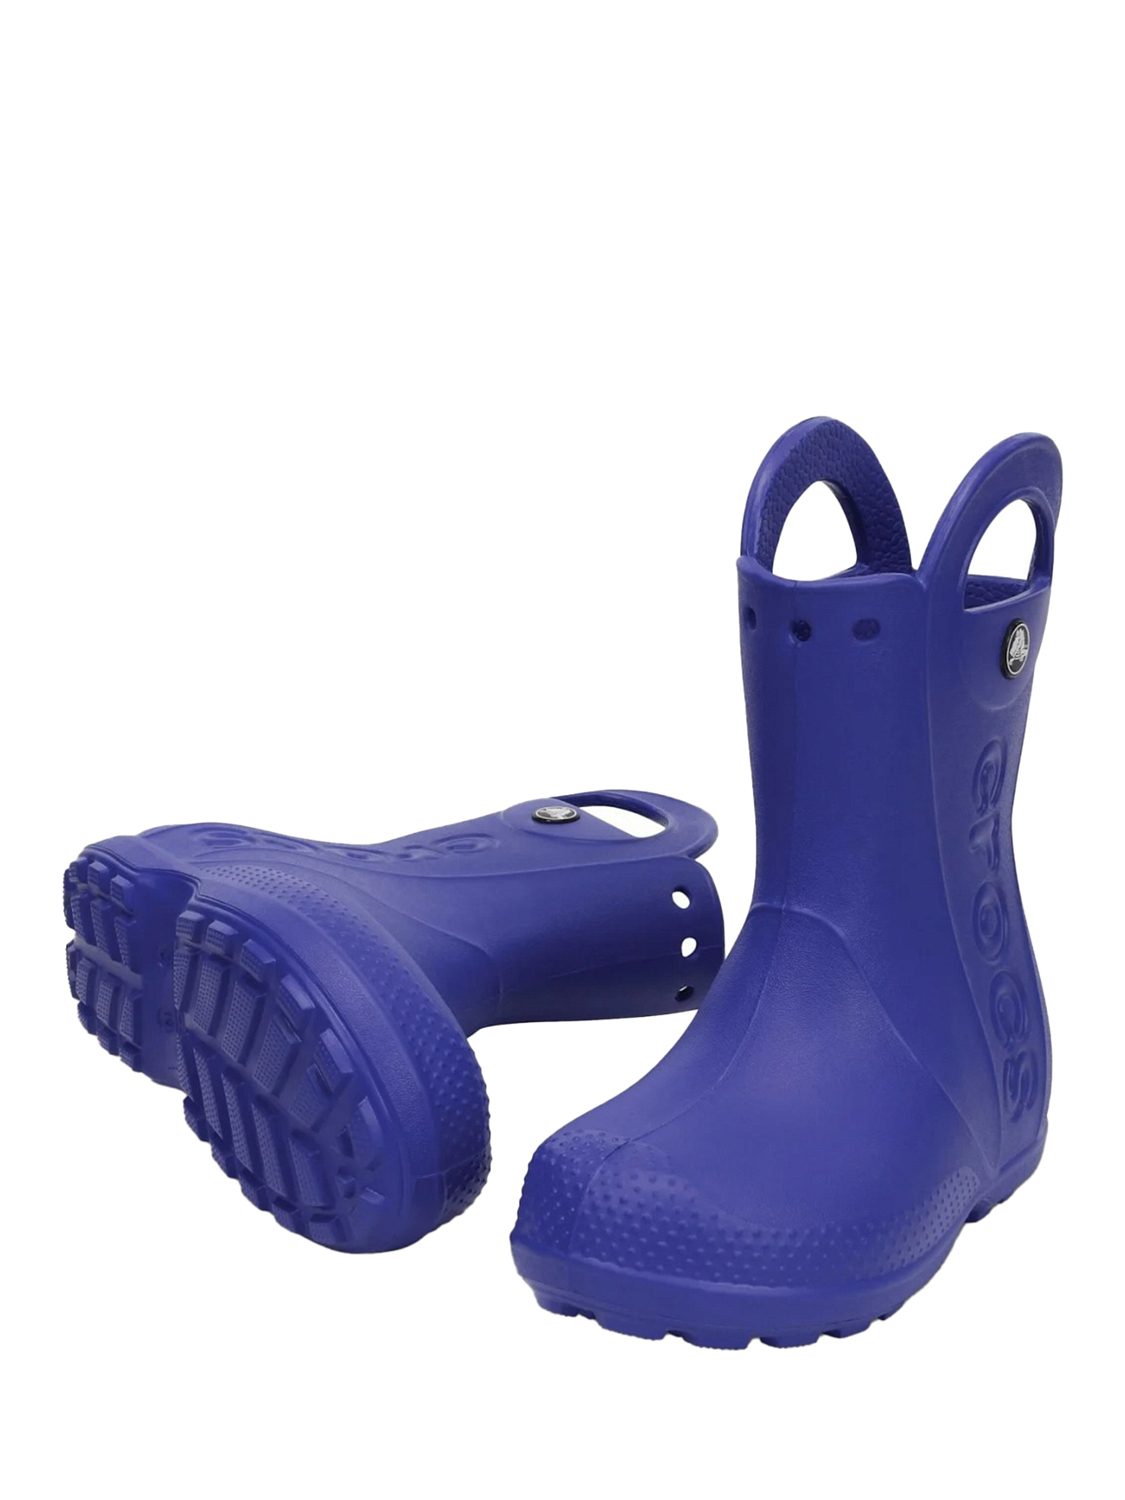 Сапоги резиновые Crocs Rain Boot K Cerulean Blue